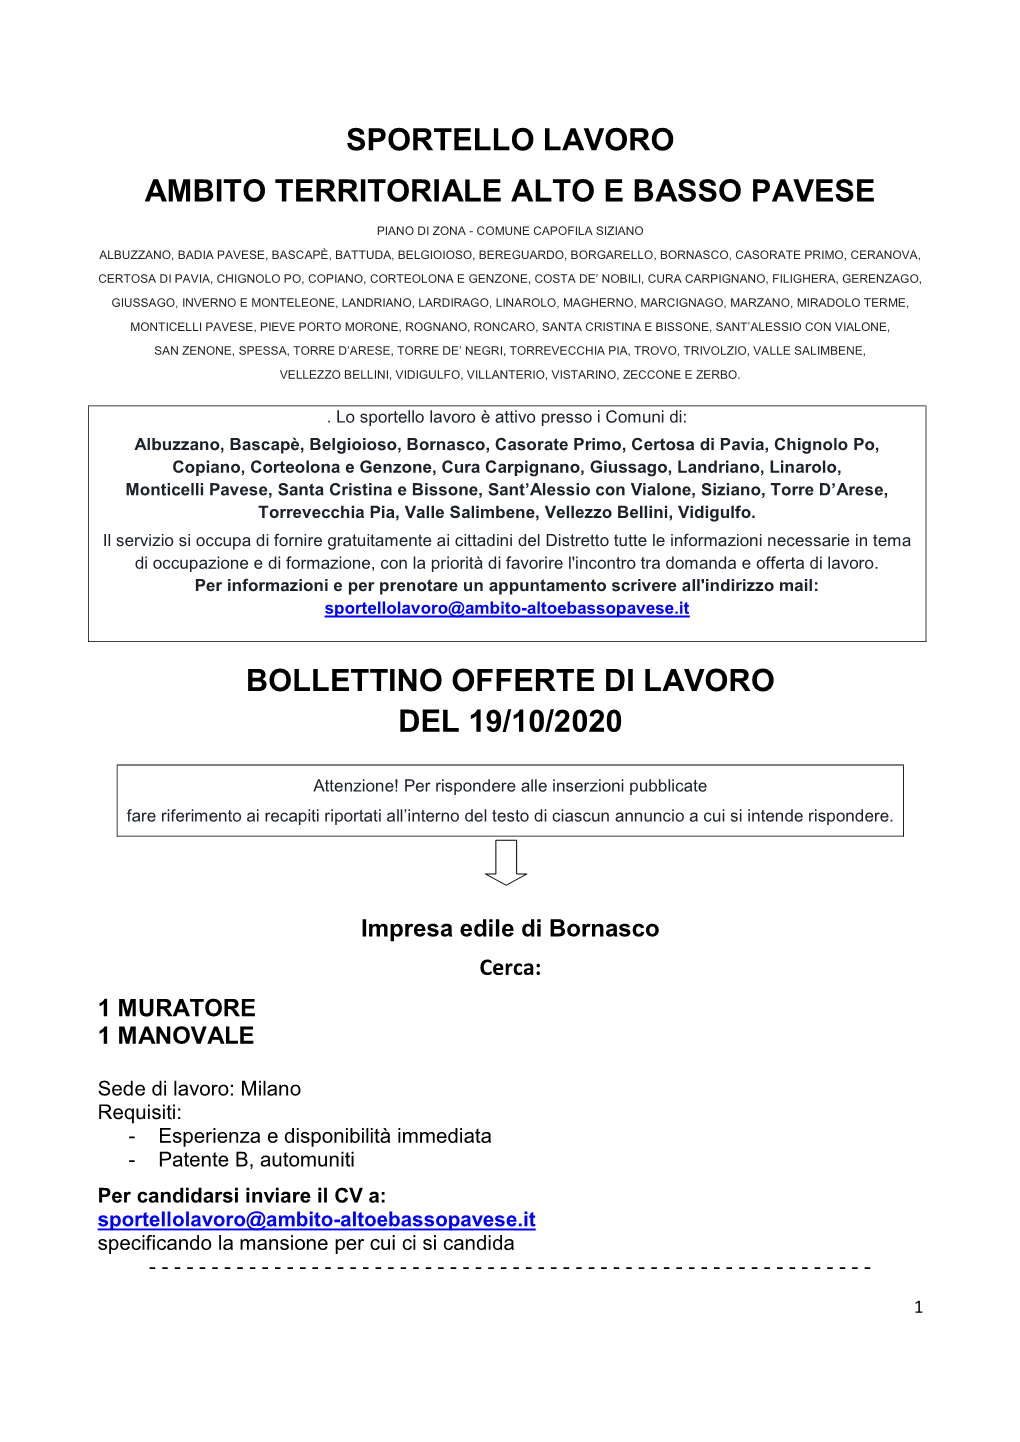 Bollettino Offerte Di Lavoro Del 19/10/2020